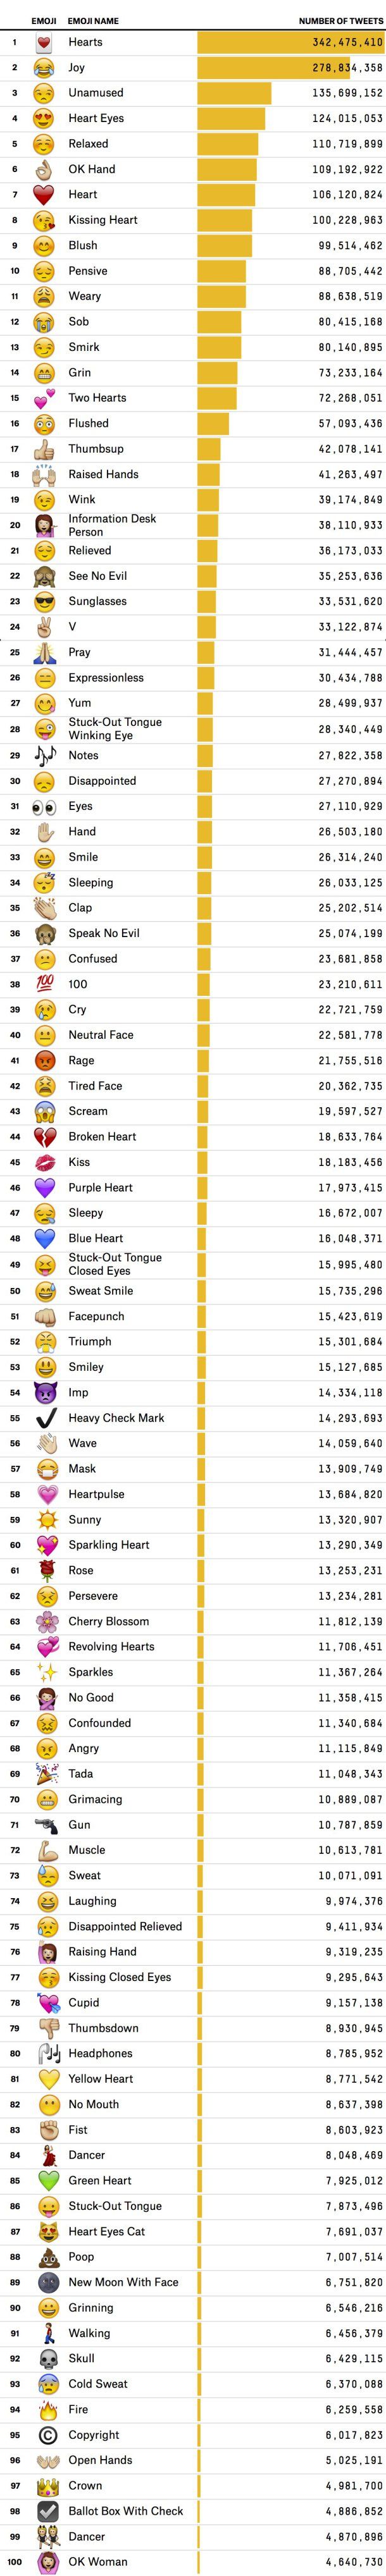 most used emojis